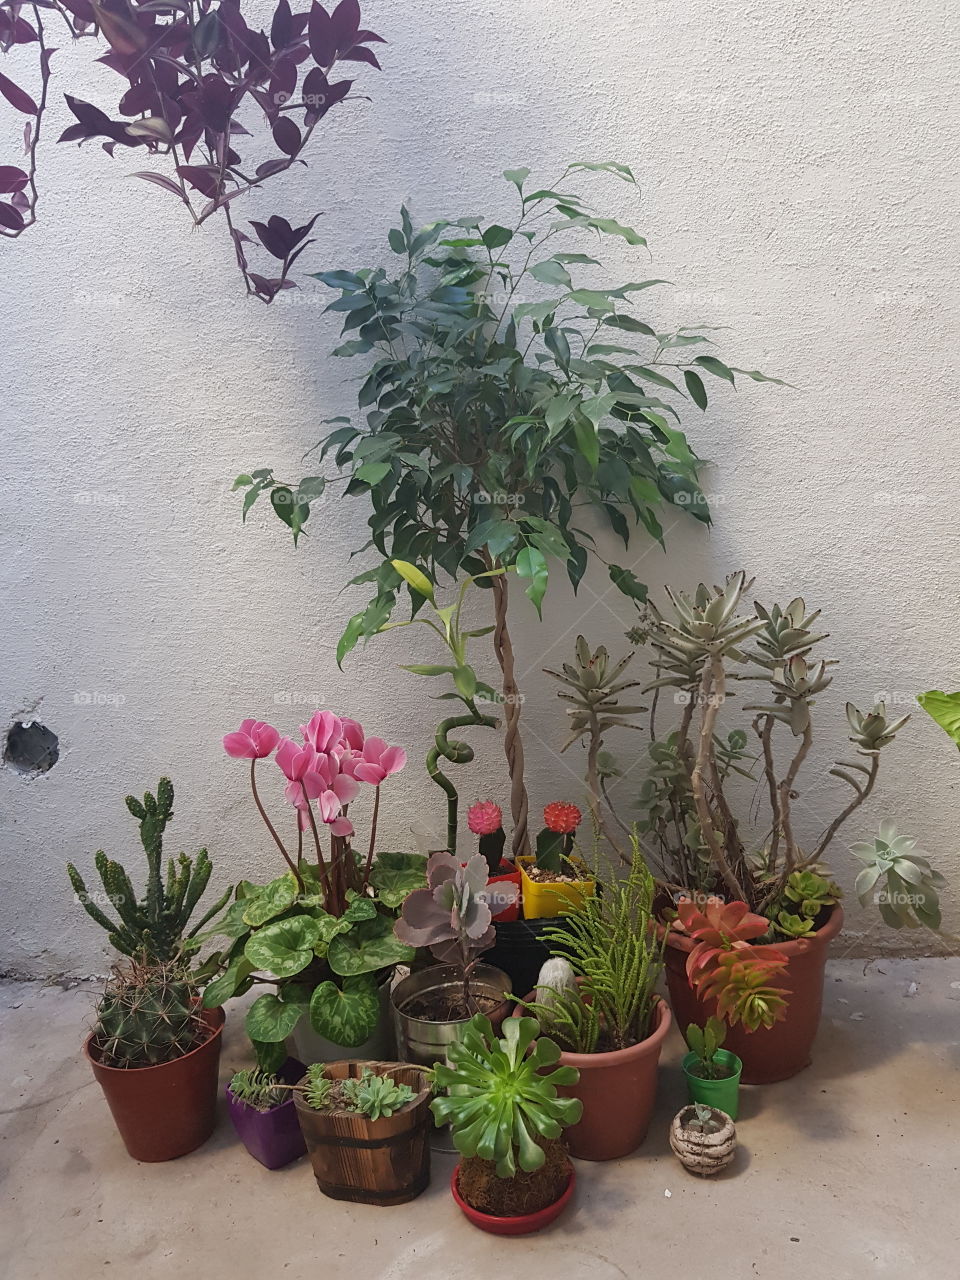 quien no quiere plantas en su jardin??